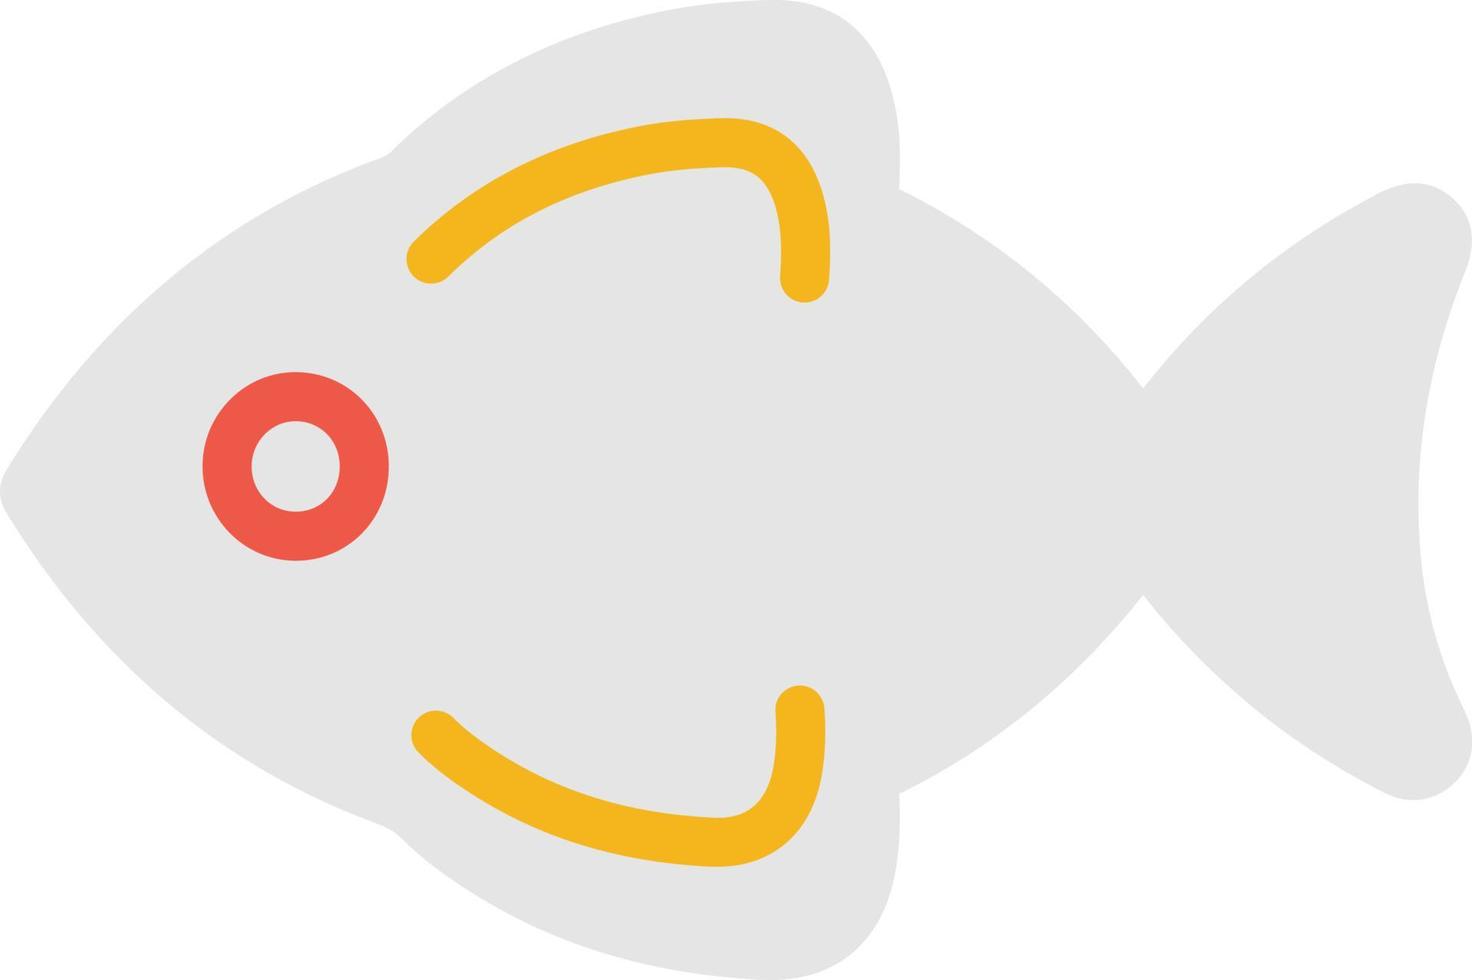 poisson blanc, illustration, vecteur sur fond blanc.